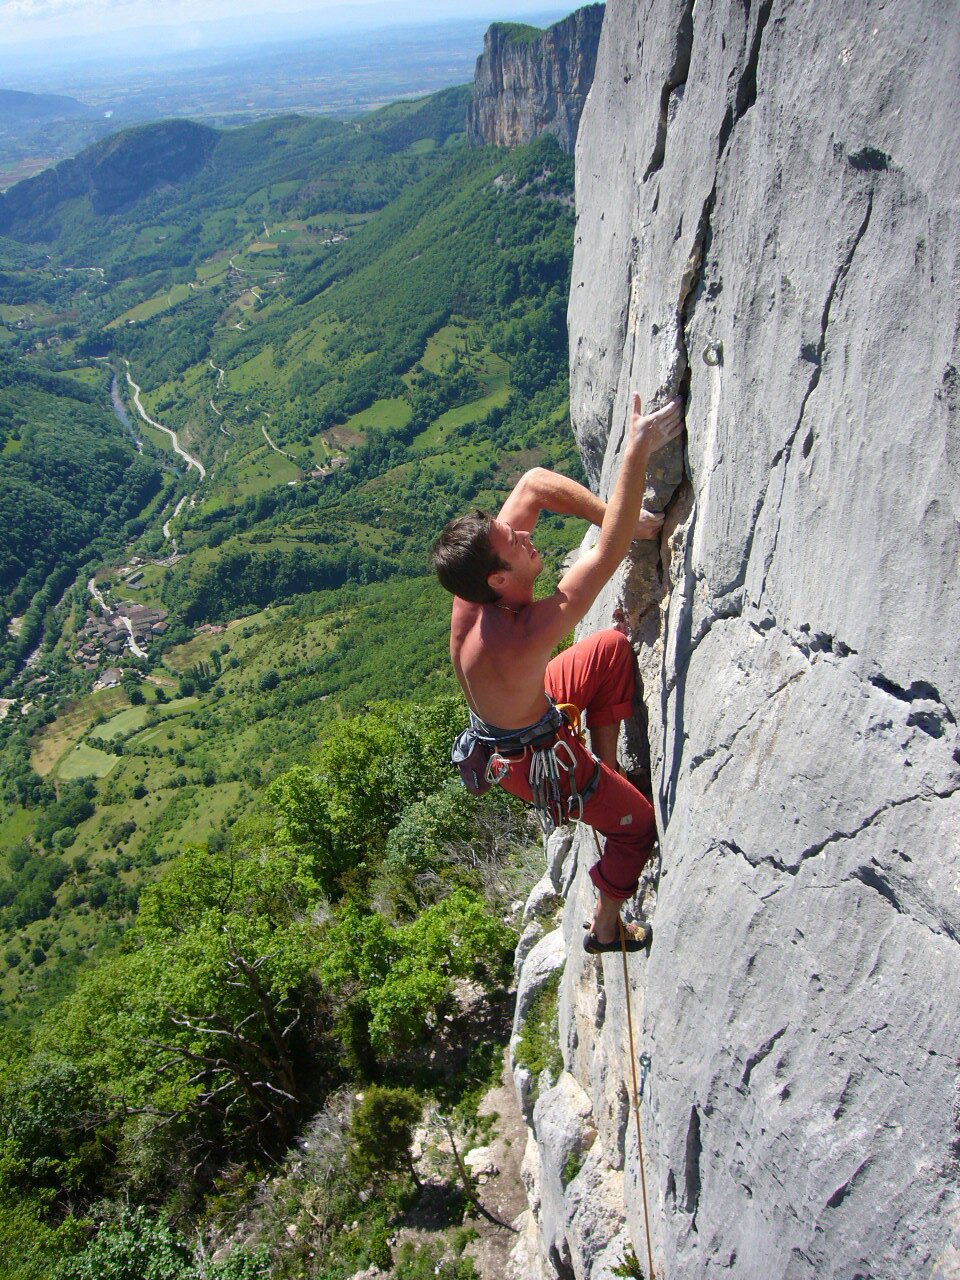 Na zdjęciu znajduje się mężczyzna, który wspina się po skalnej ścianie. Ma nagi tors i czerwone spodnie z przymocowanym do nich sprzętem wspinaczkowym. Po prawej stronie widoczna jest skała, po której się wspina. Lewą część zdjęcia wypełnia widok zielonej doliny w oddali.